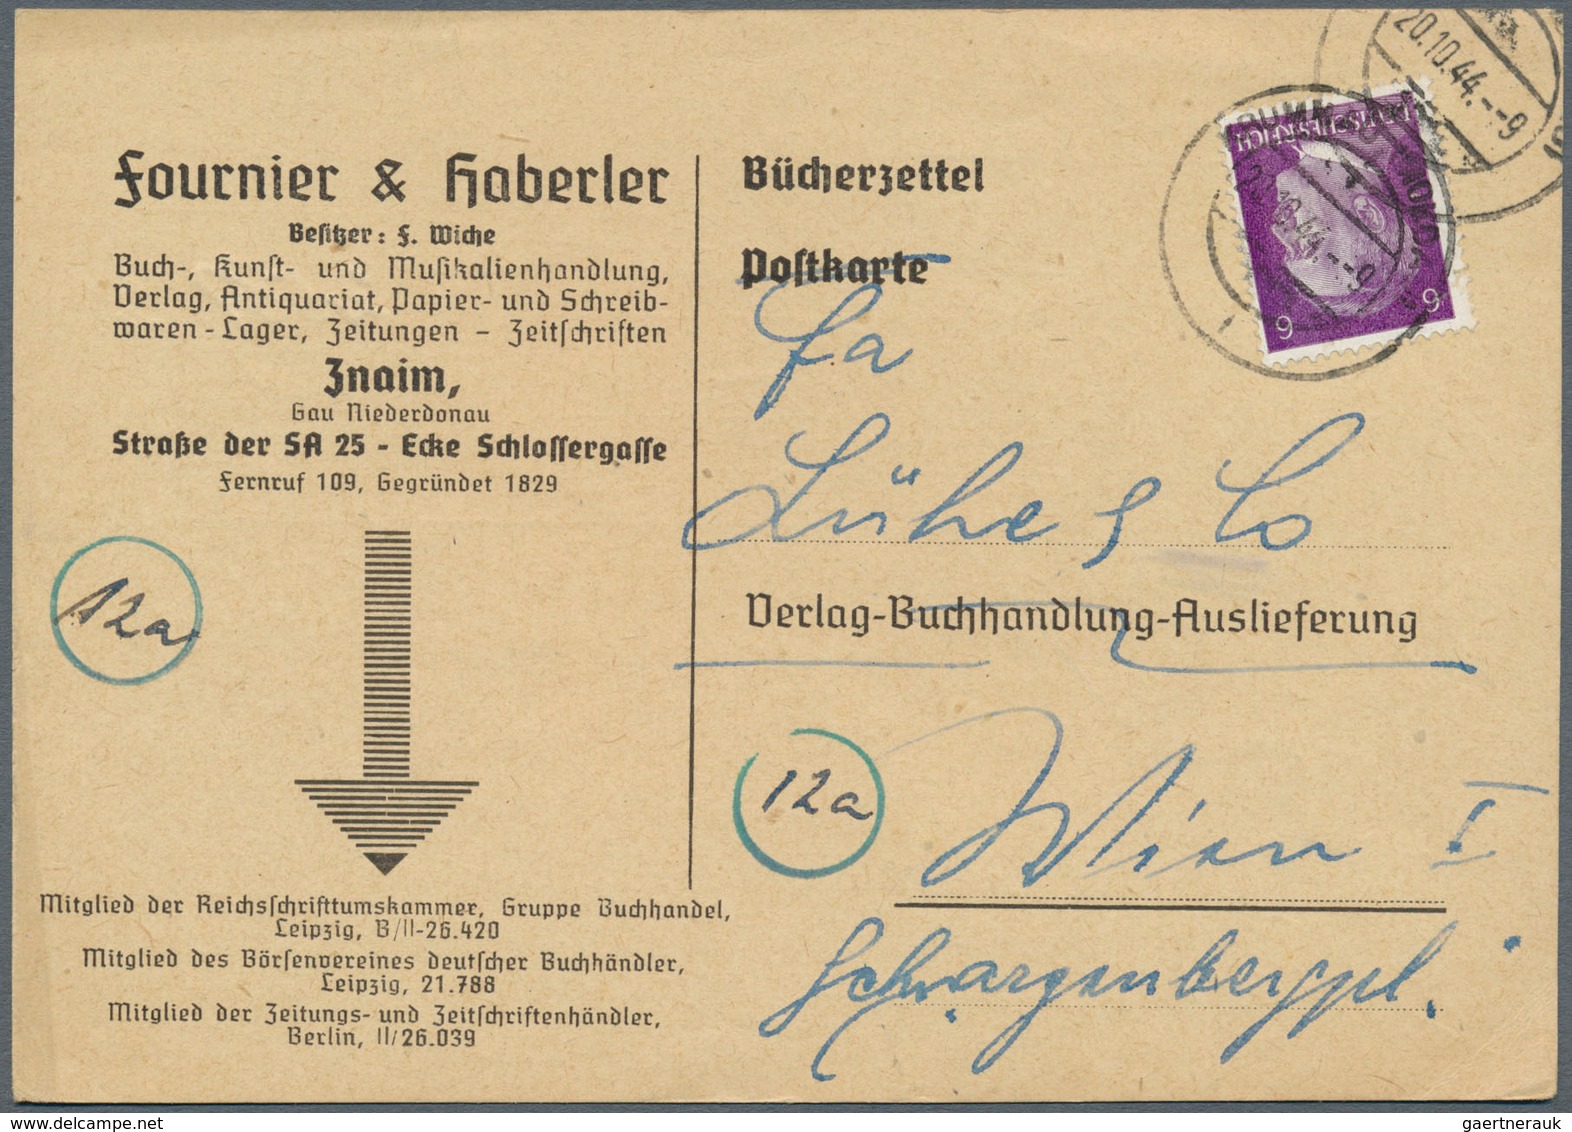 31049 Deutschland: 1880/1985, riesiger Posten von Briefen und Ganzsachen subsummiert unter dem Stichwort "